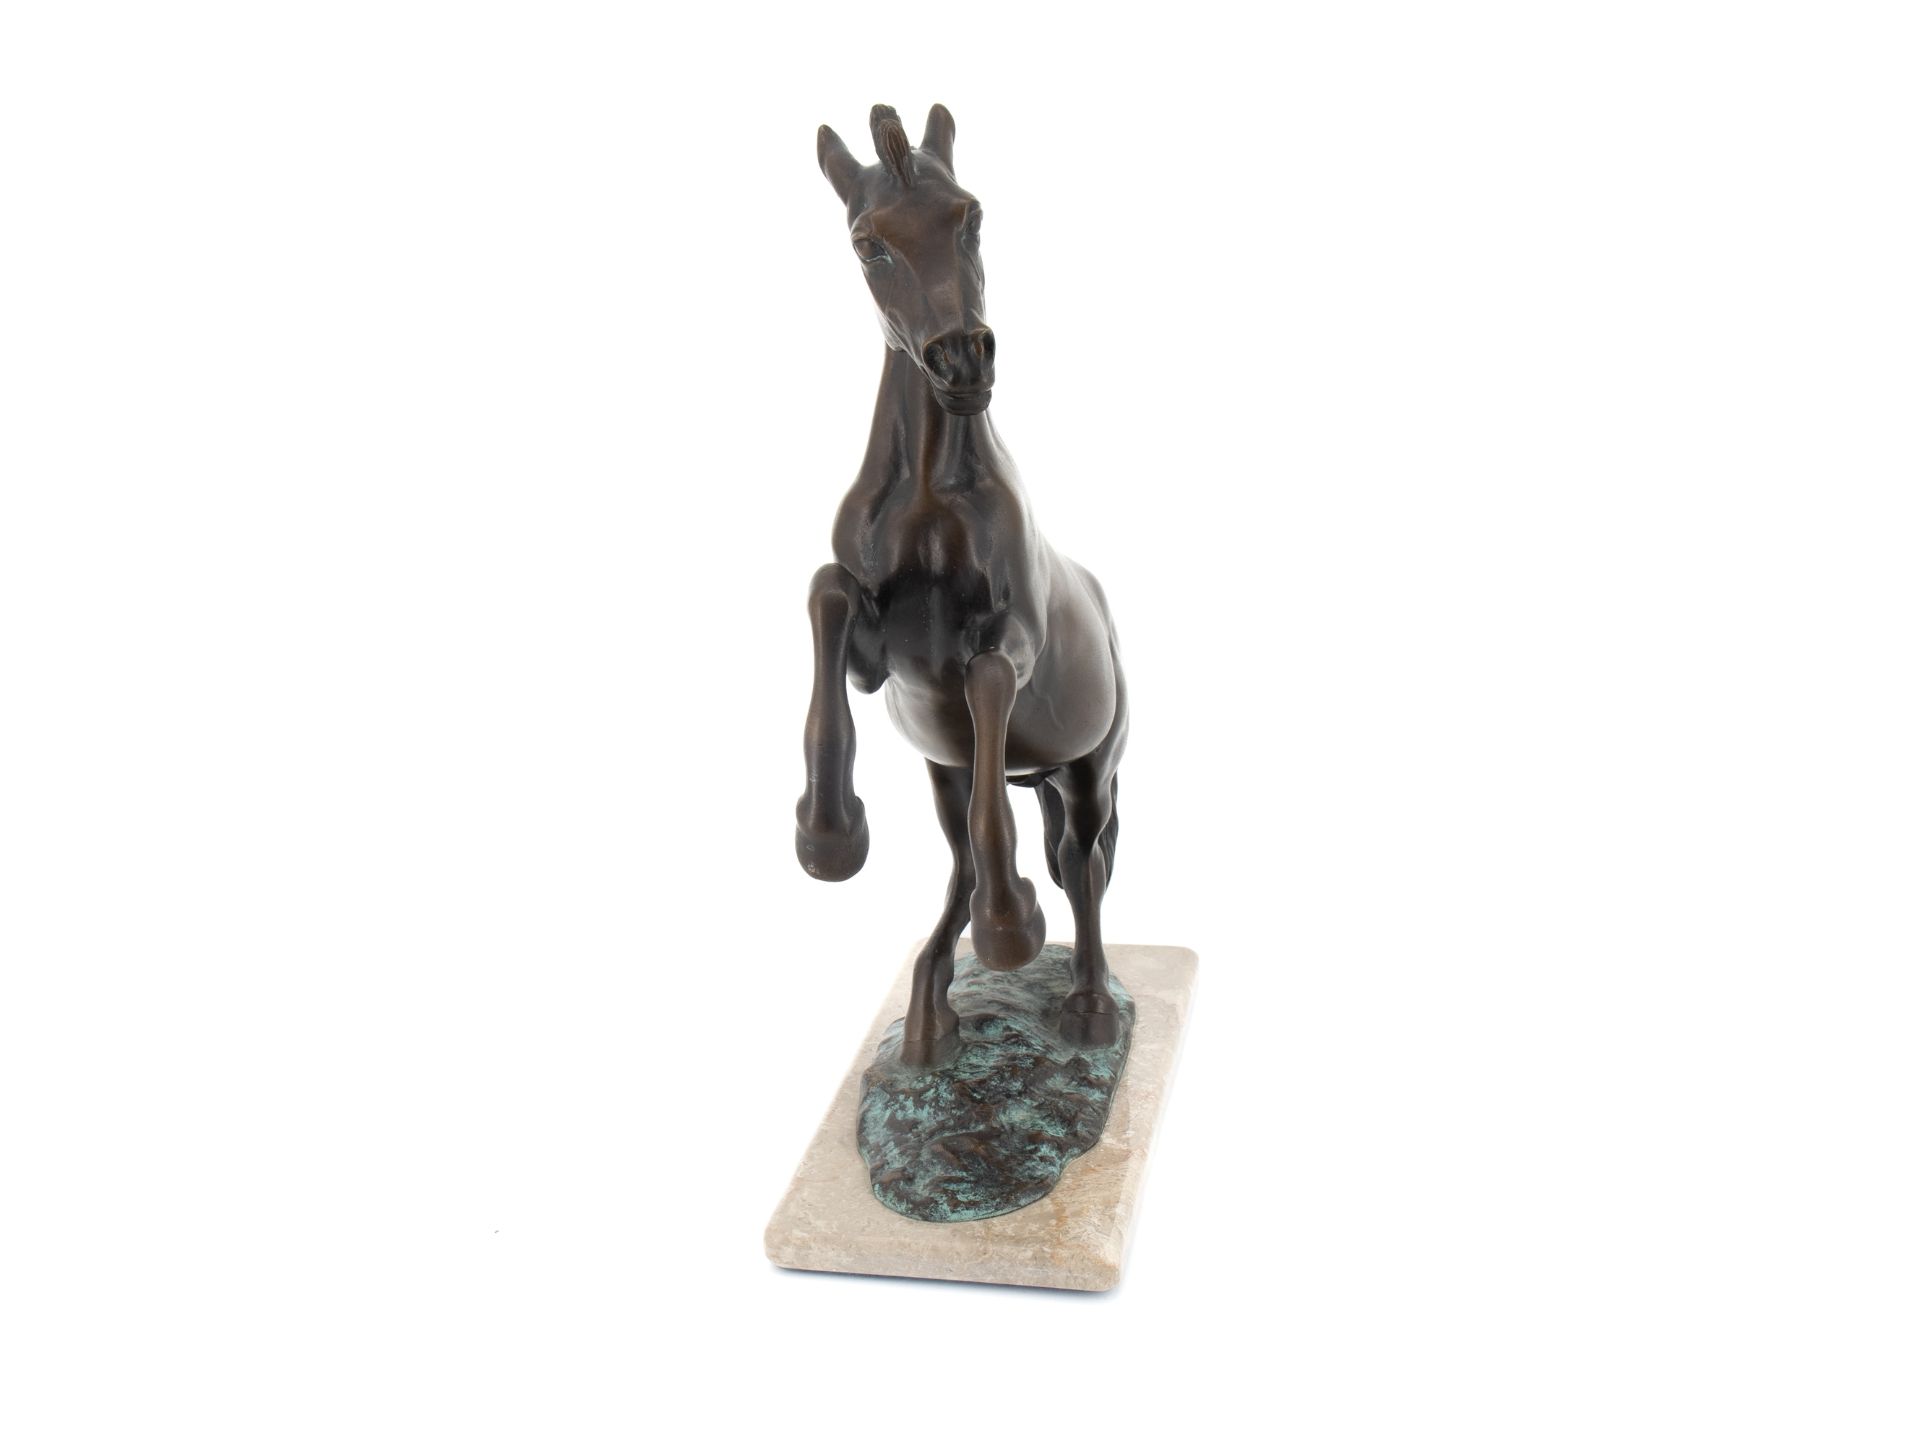 Diller Helmut (1911 - 1984), Bronzeskulptur "Steigendes Pferd" - Bild 2 aus 9